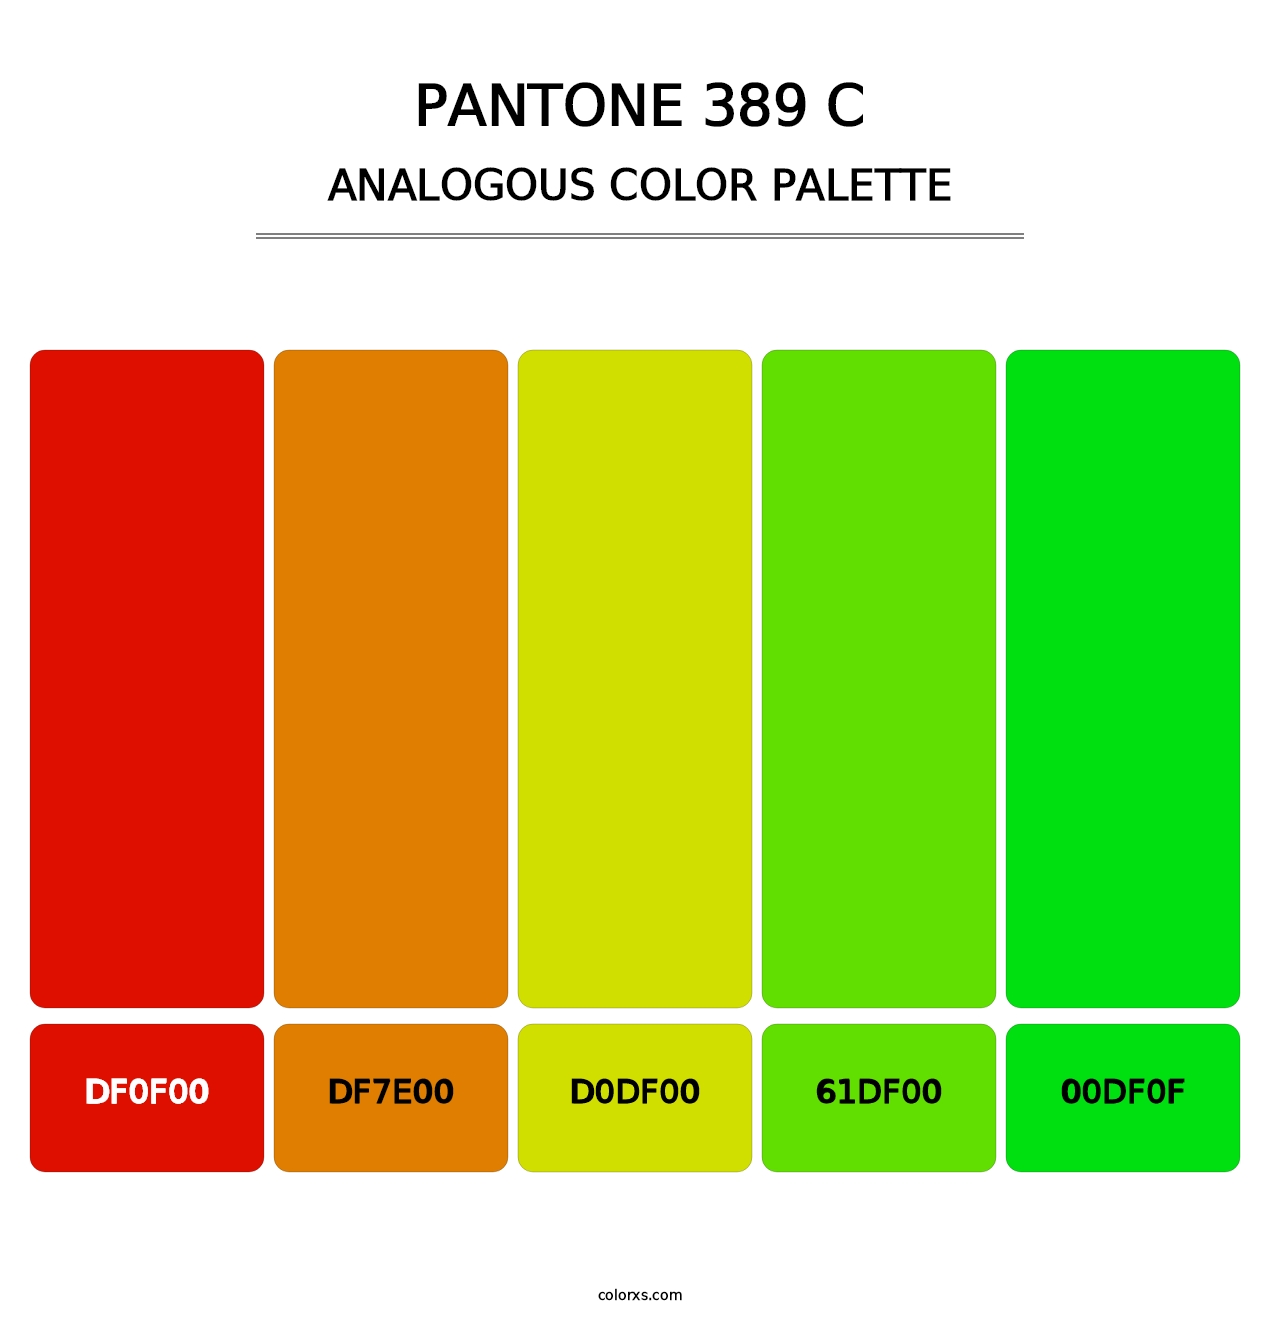 PANTONE 389 C - Analogous Color Palette